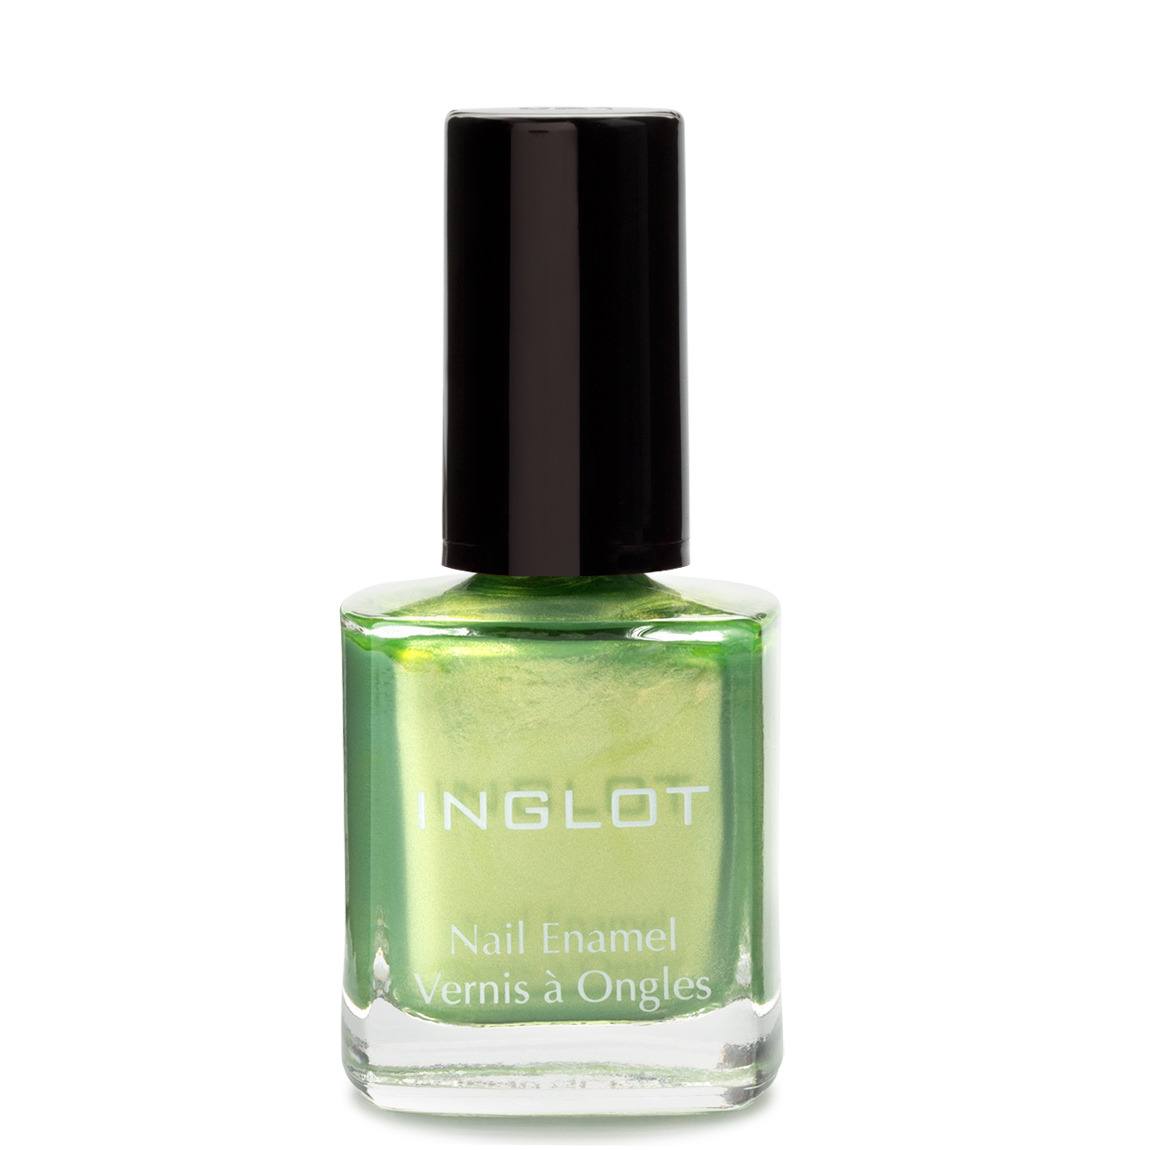 Inglot Cosmetics Nail Enamel in #319